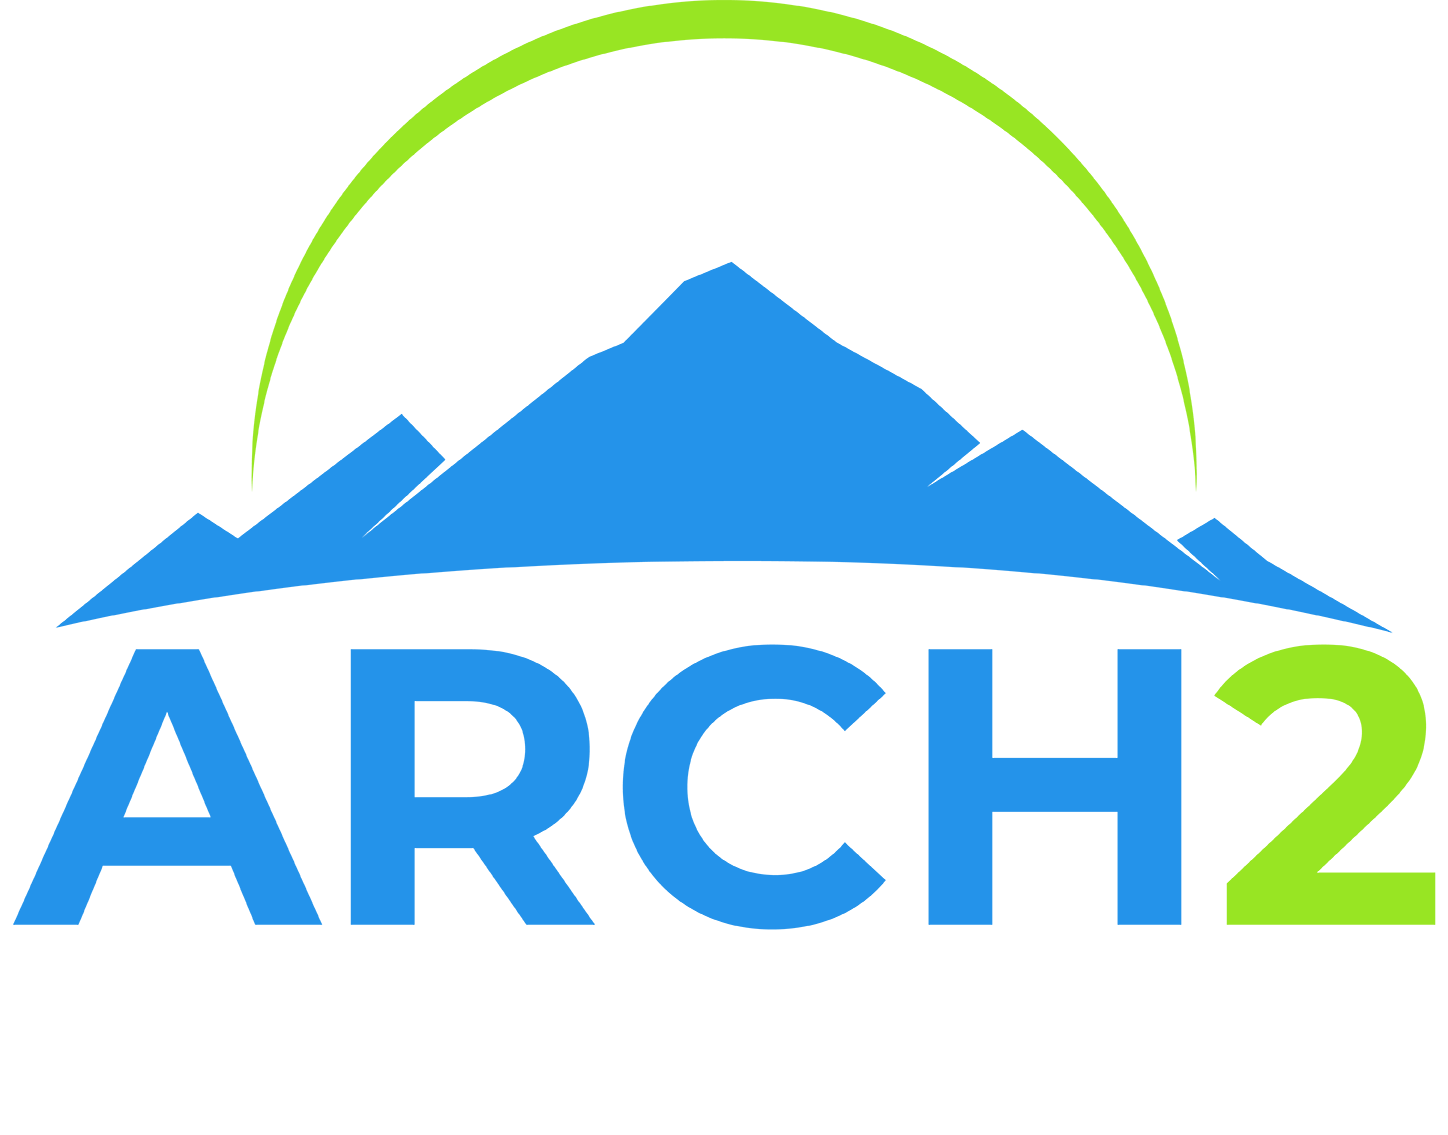 ARCH2 - Appalachian Regional Clean Hydrogen Hub